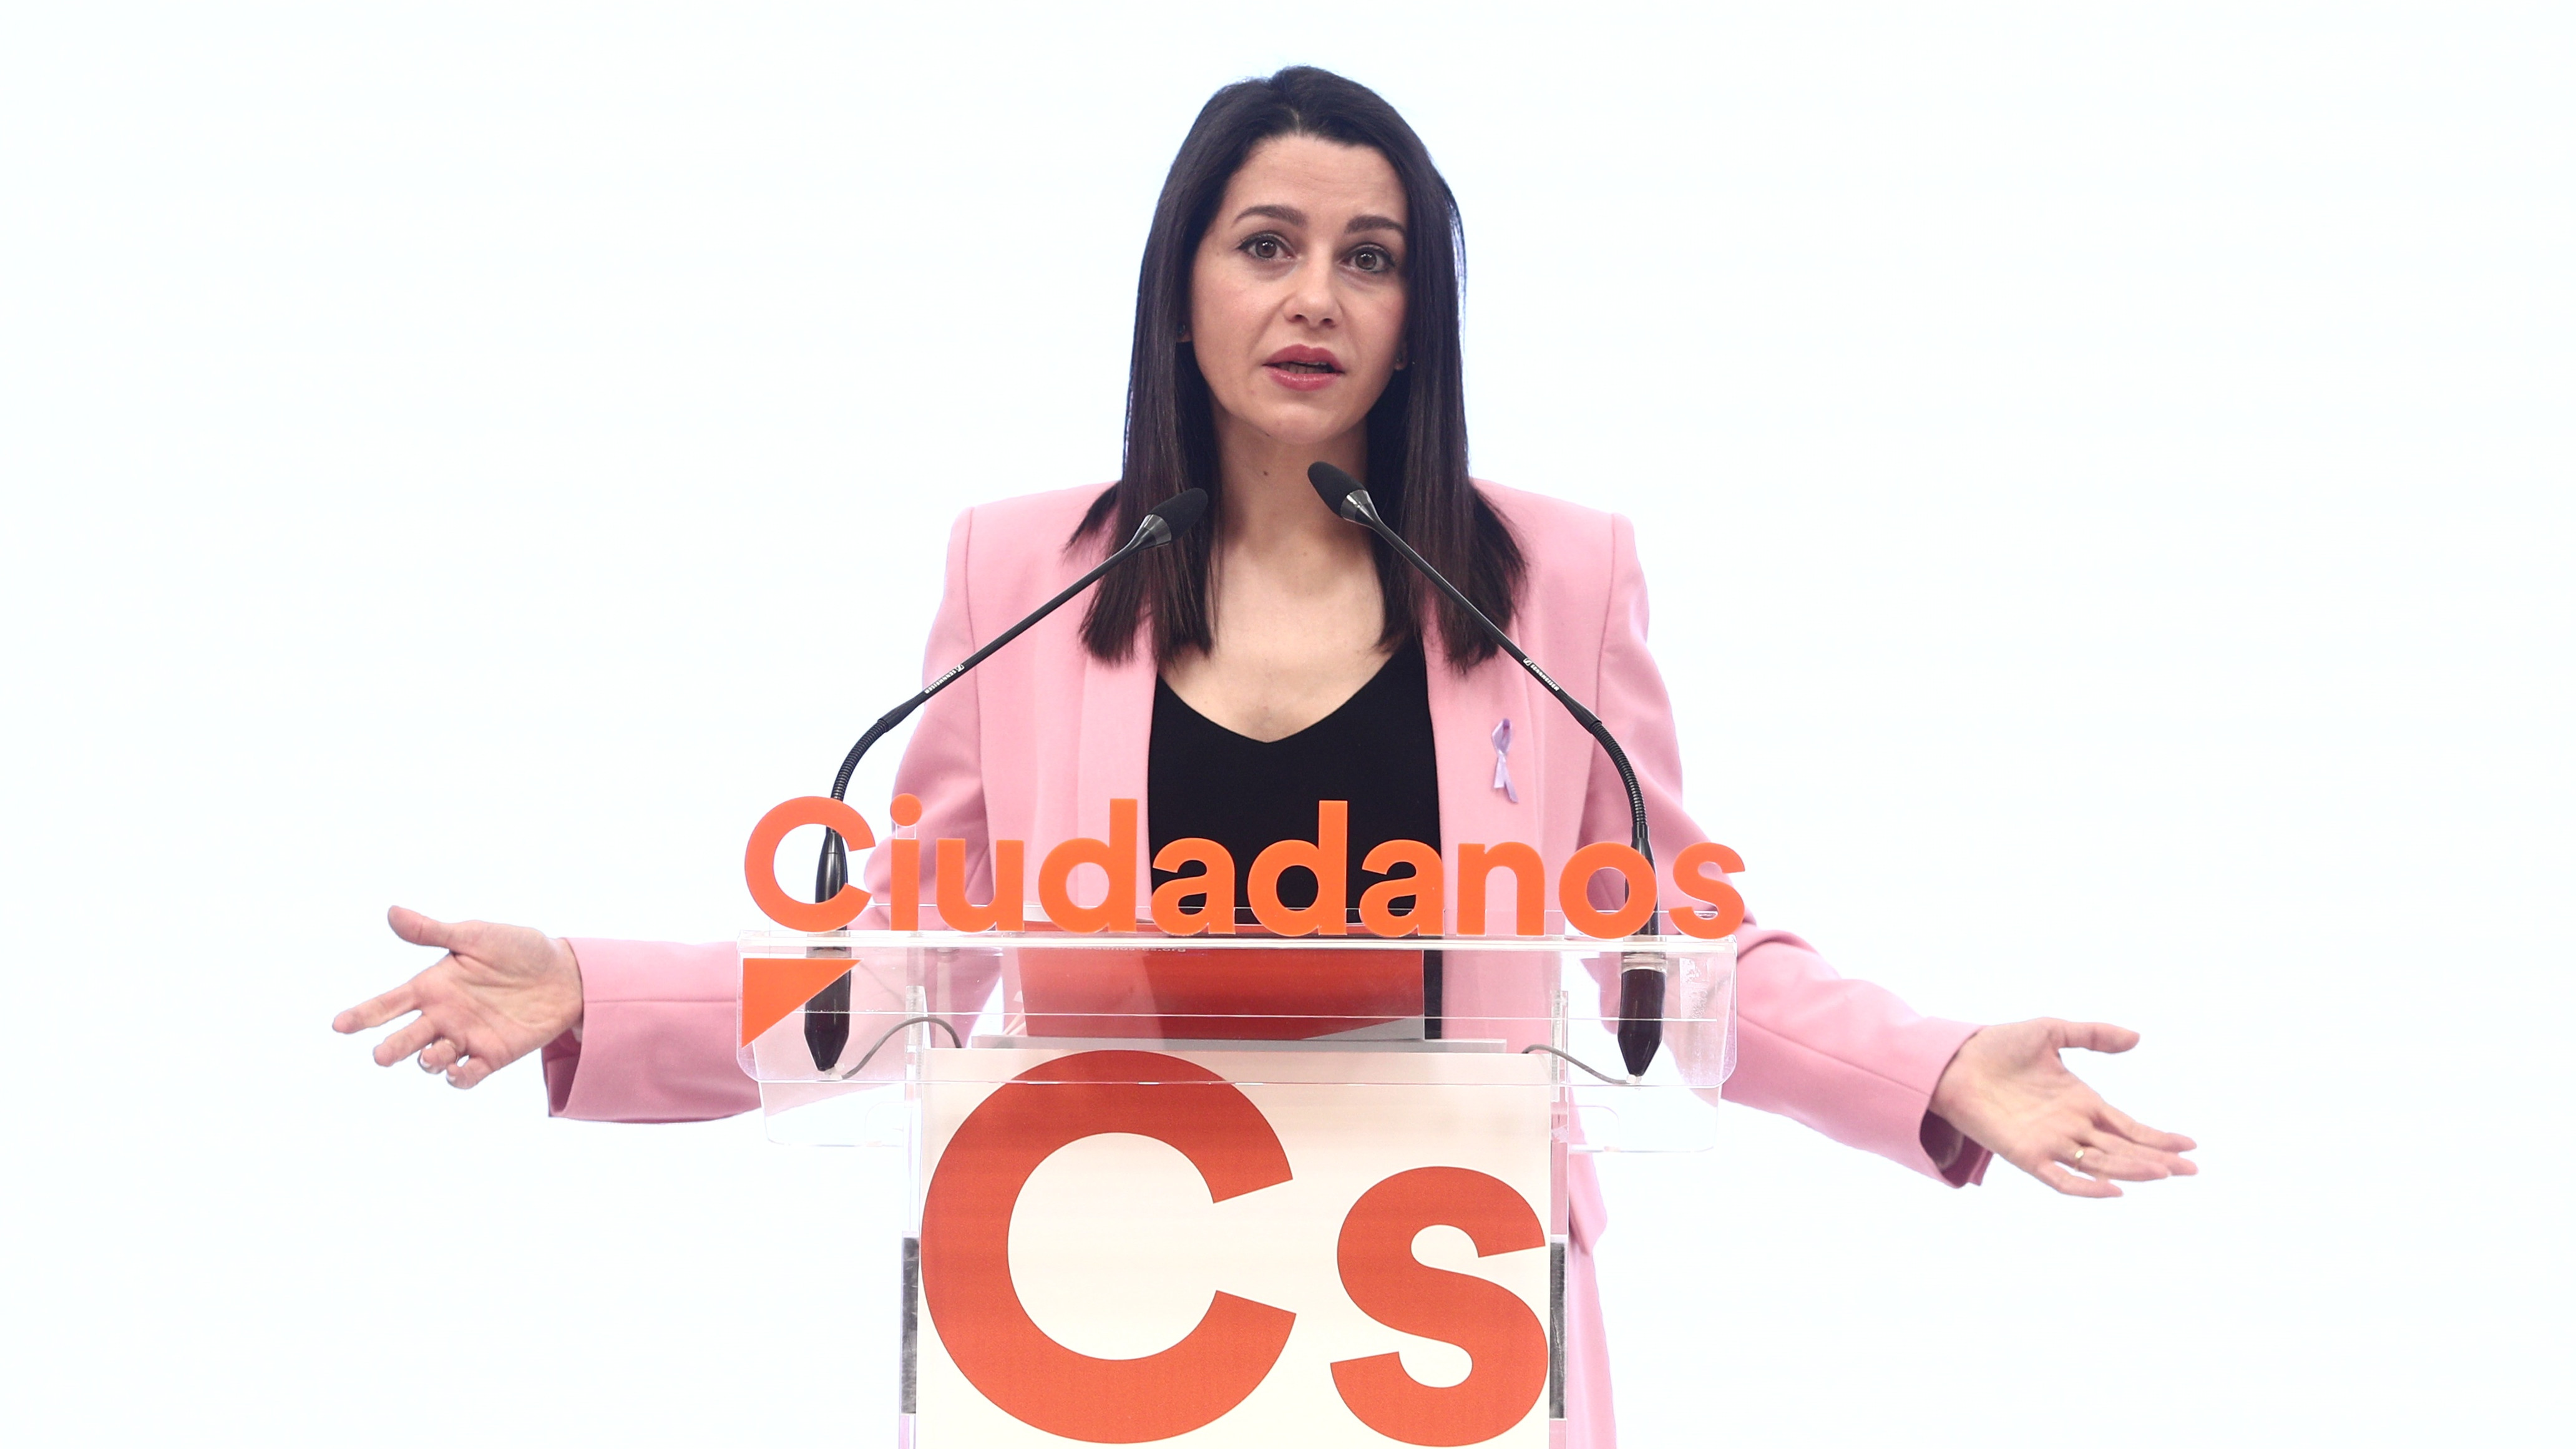 Presidenta de Ciudadanos Inés Arrimadas